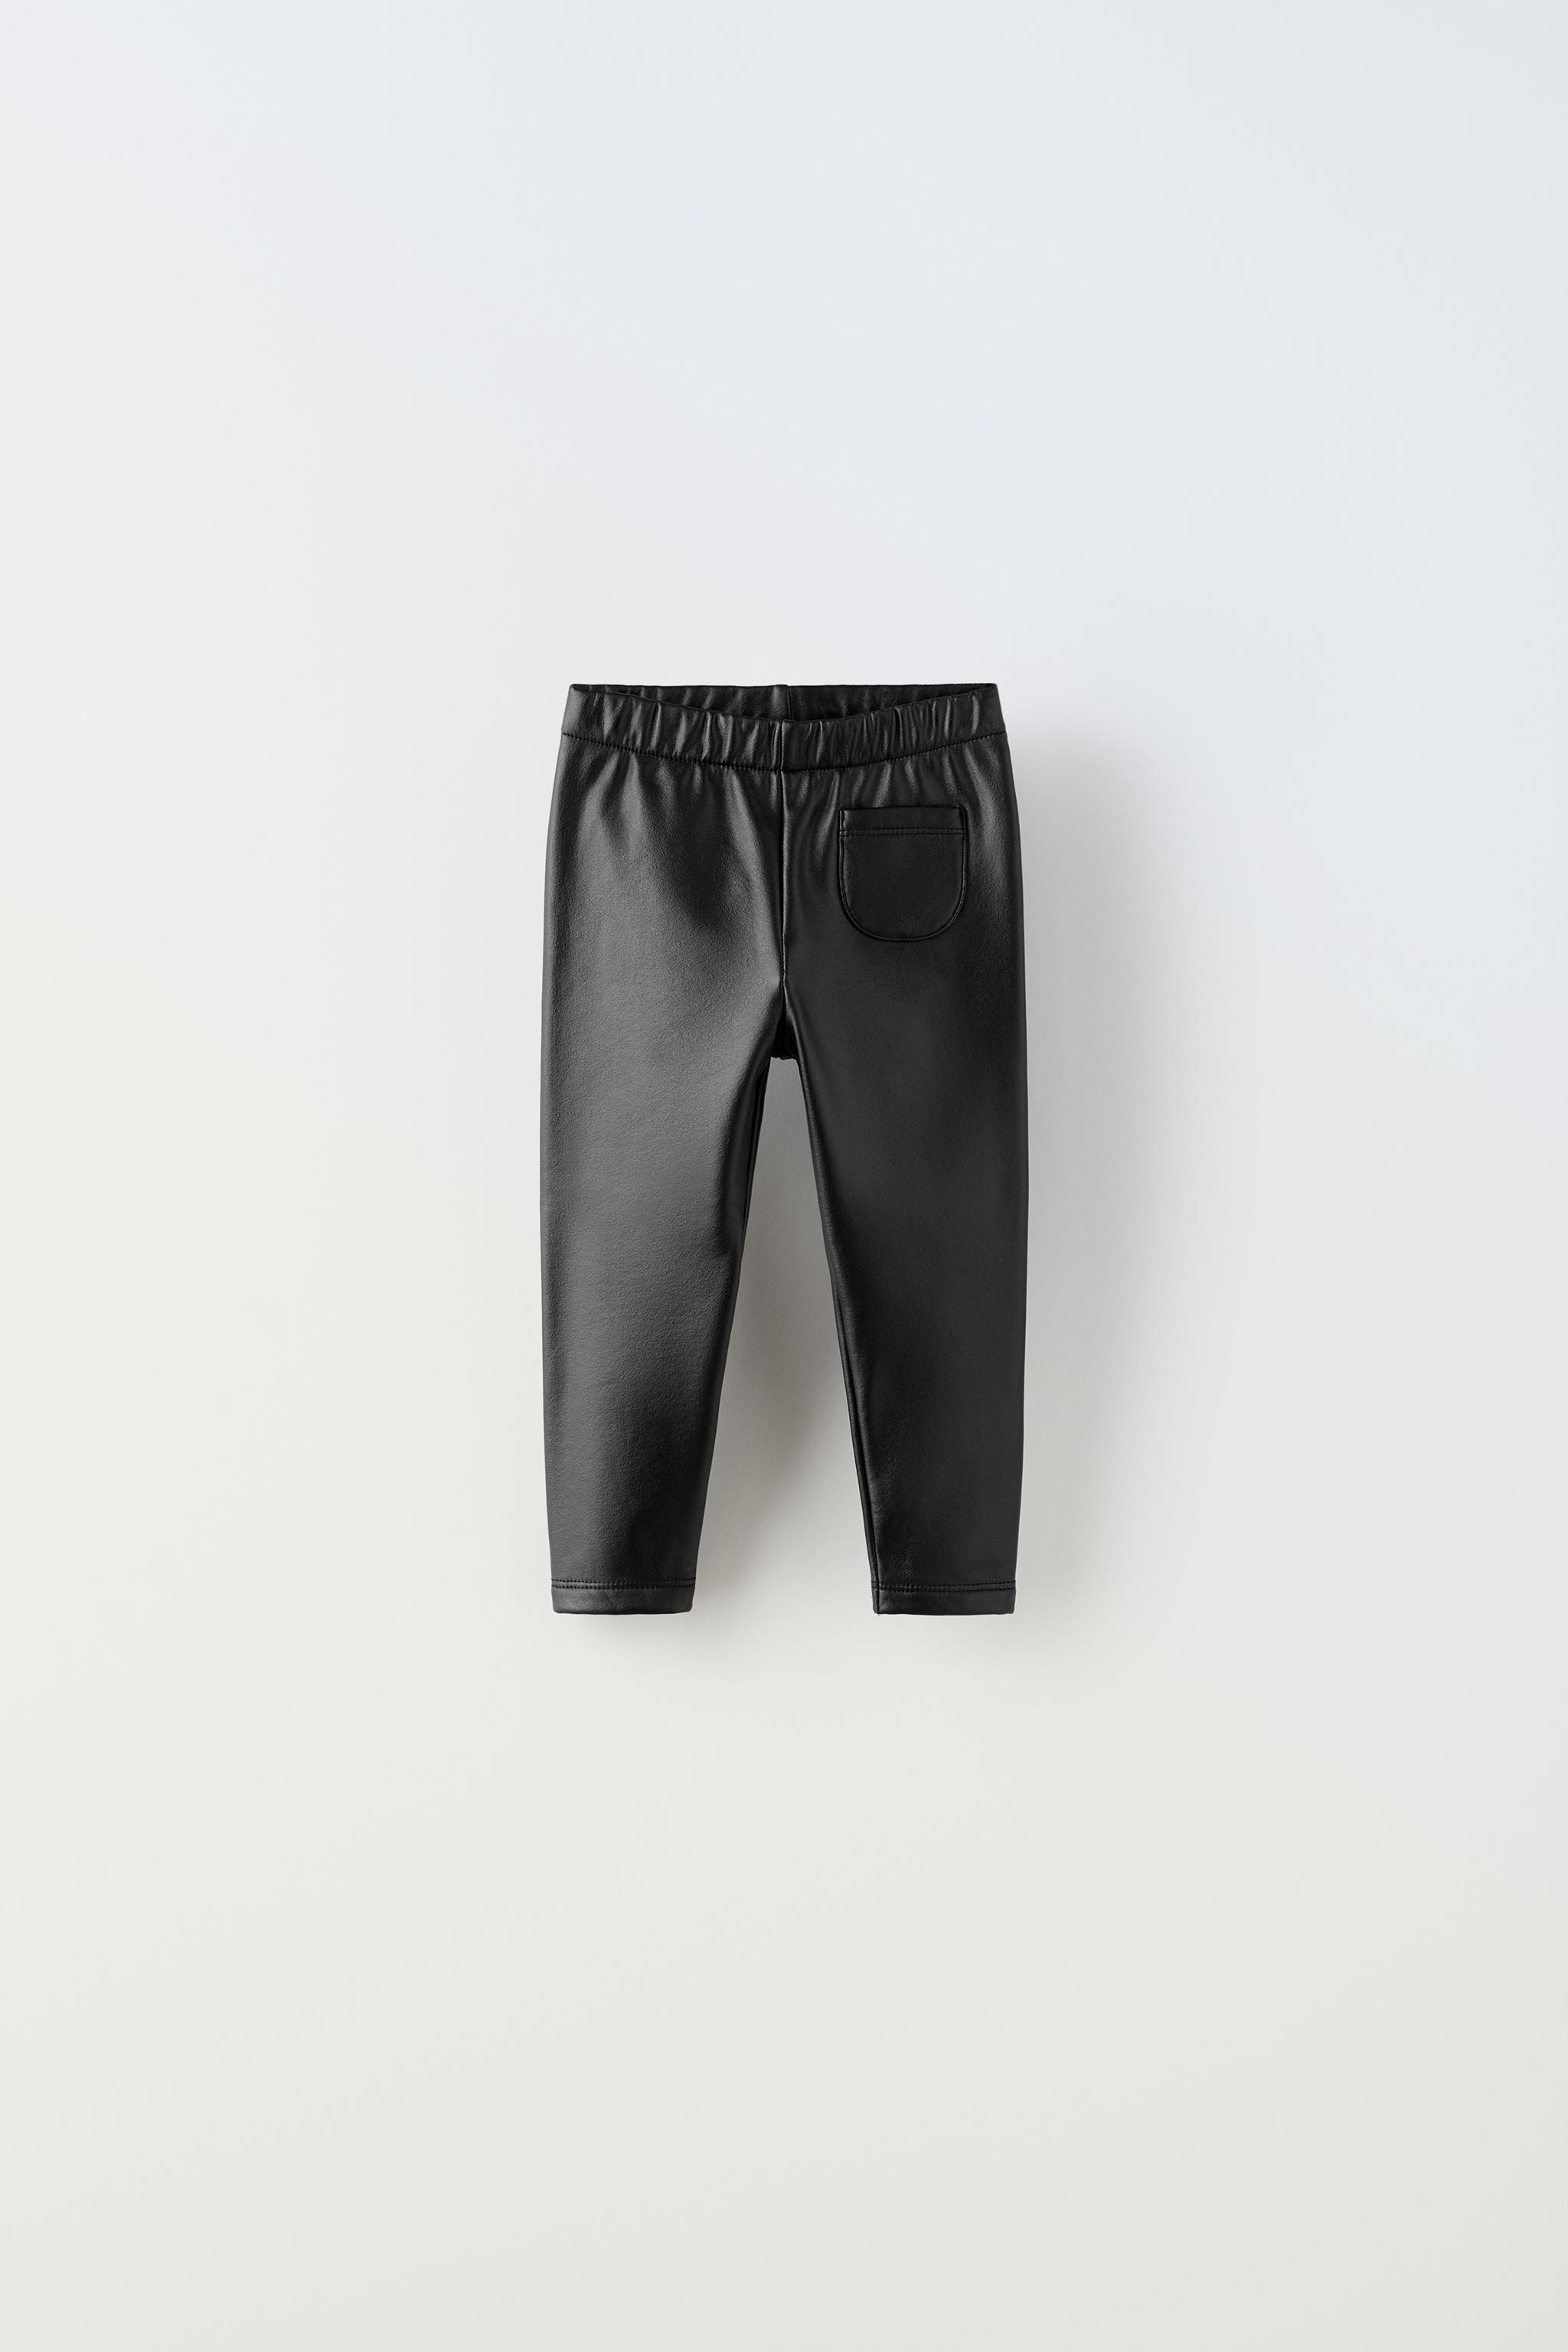 Zara Women Faux leather leggings 8372/040/704 (Large): Buy Online